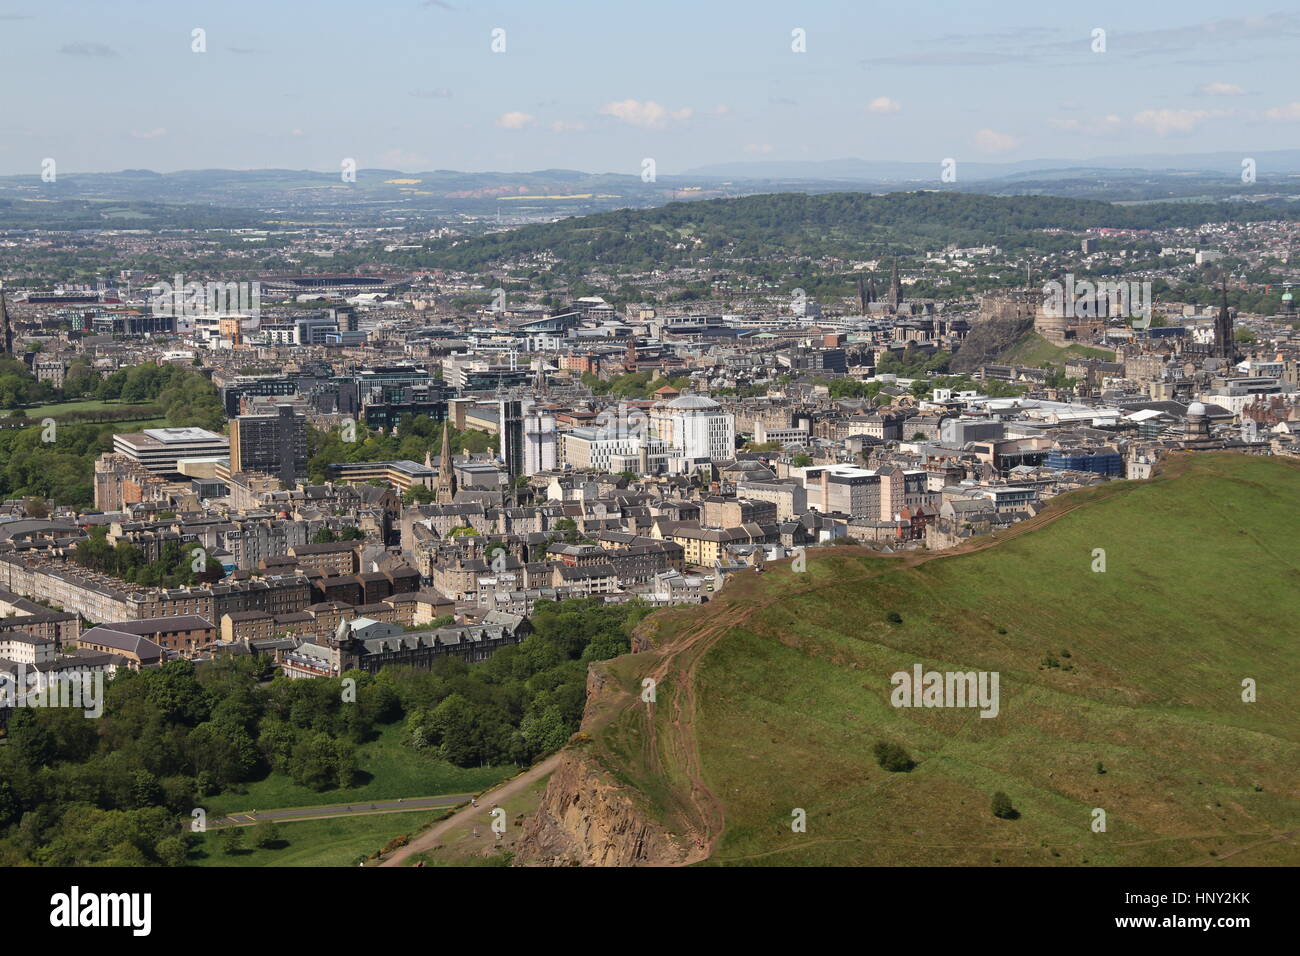 Edinburgh skyline de Arthur's Seat.Le Château d'Édimbourg, le stade de Murrayfield et à l'Université d'Édimbourg peuvent tous être vu. Banque D'Images